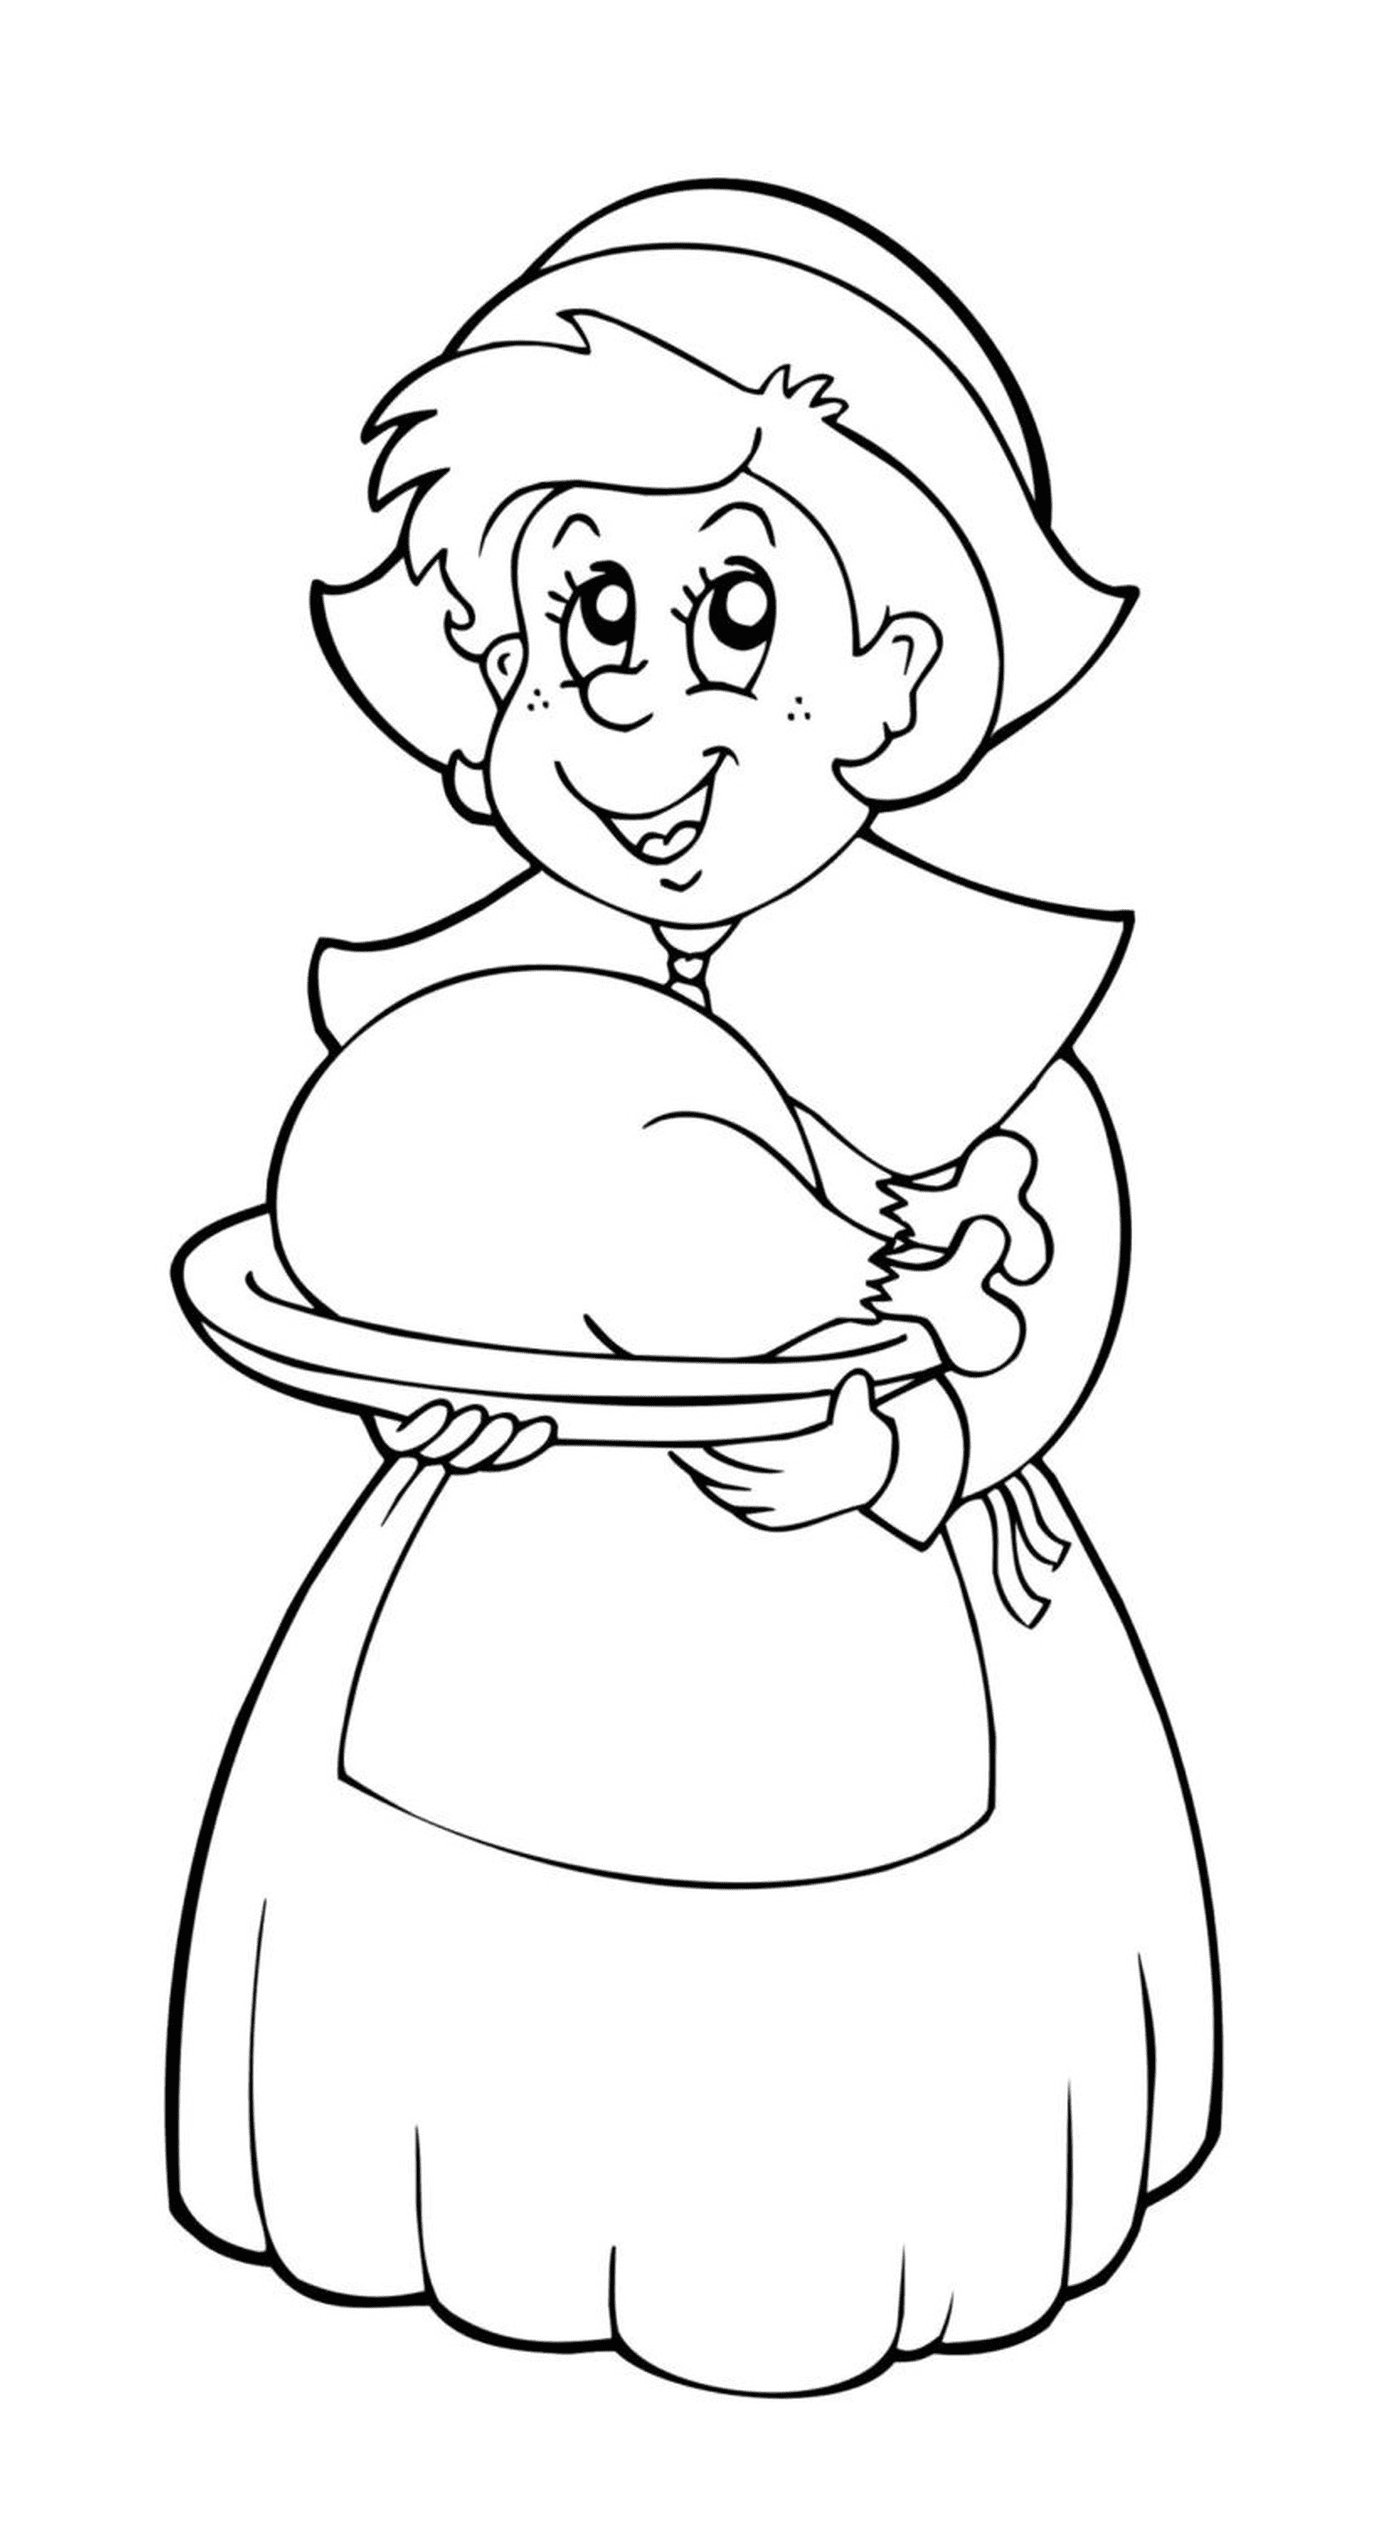  Uma mulher velha que segura um prato com um peru 